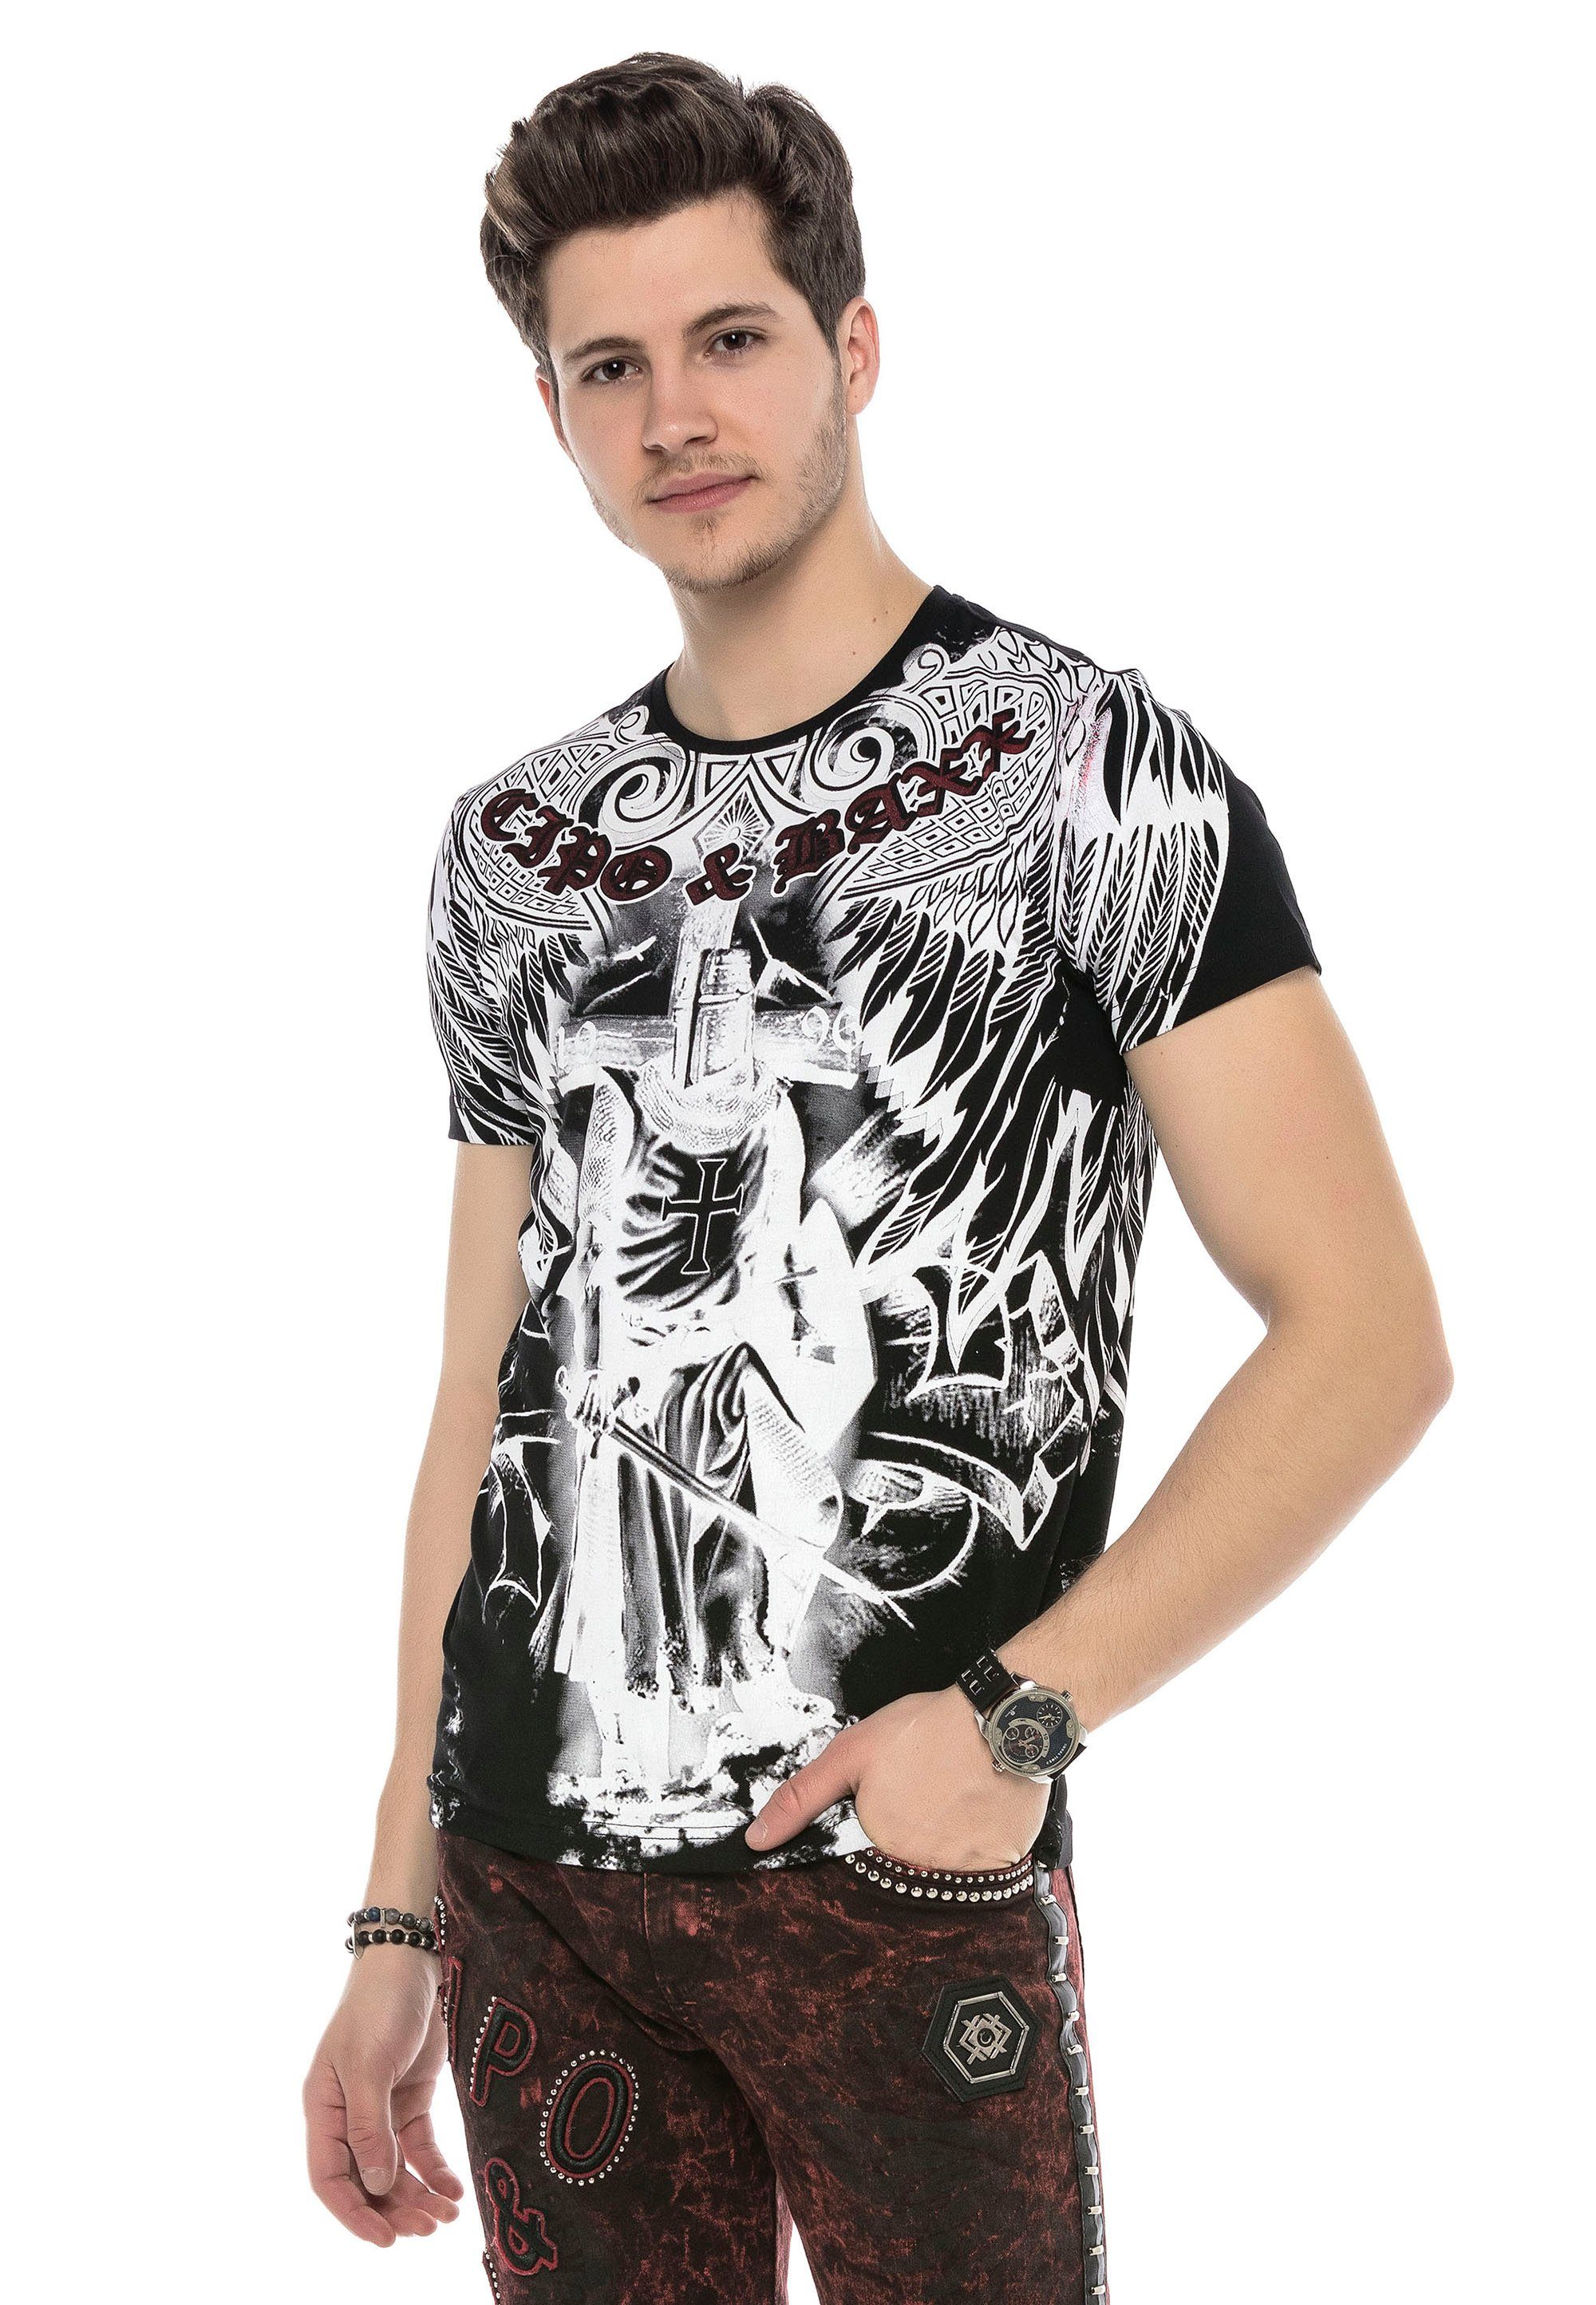 Baxx schwarz-weiß Cipo mit & grafischem T-Shirt Print